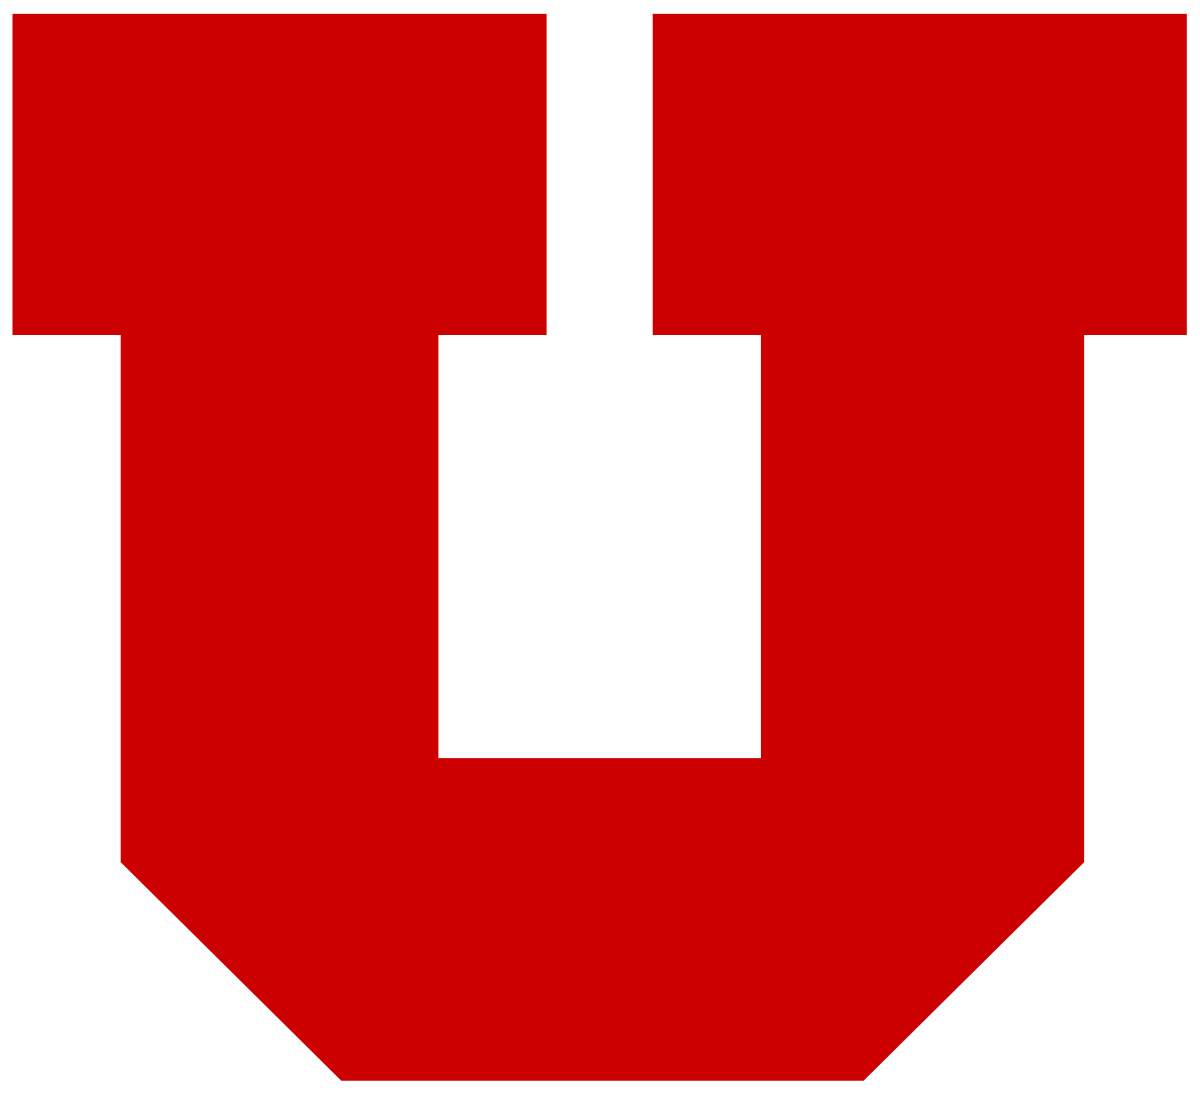 U of U Black Logo - 2010 Utah Utes football team